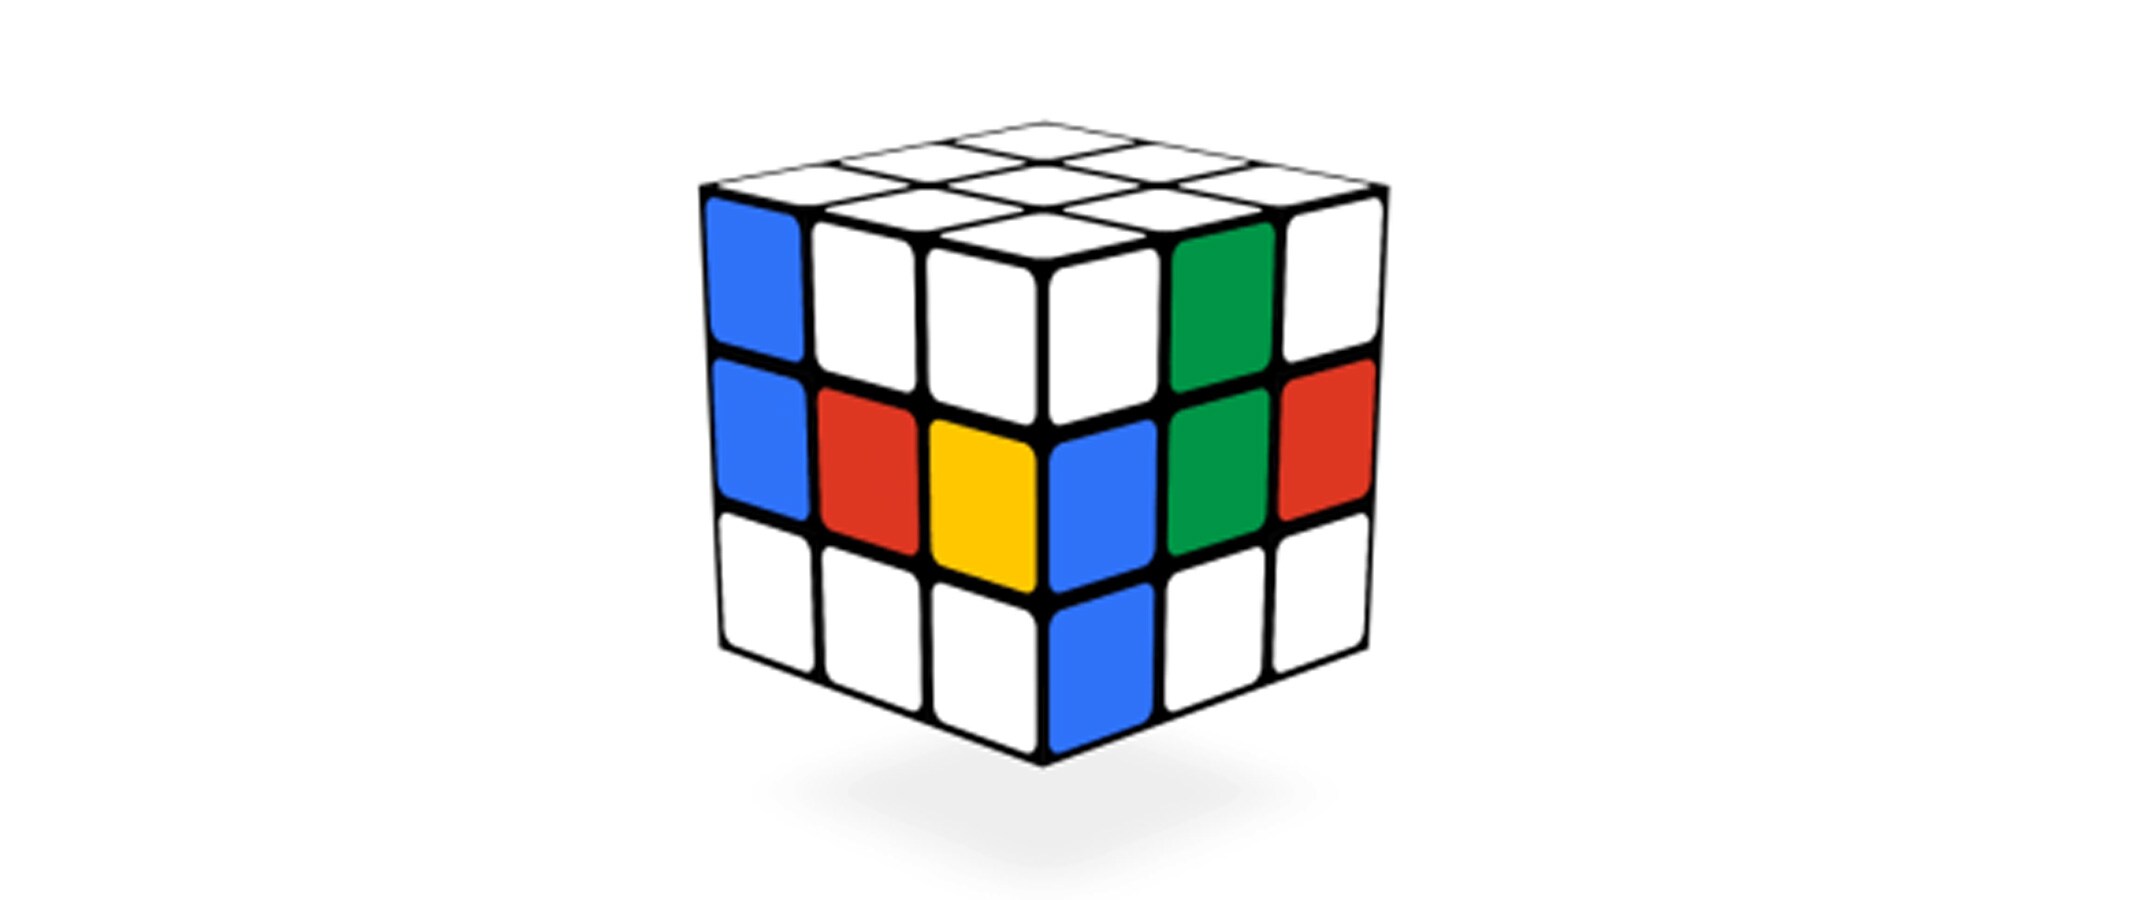 El cubo de Rubik, el reto del doodle de Google